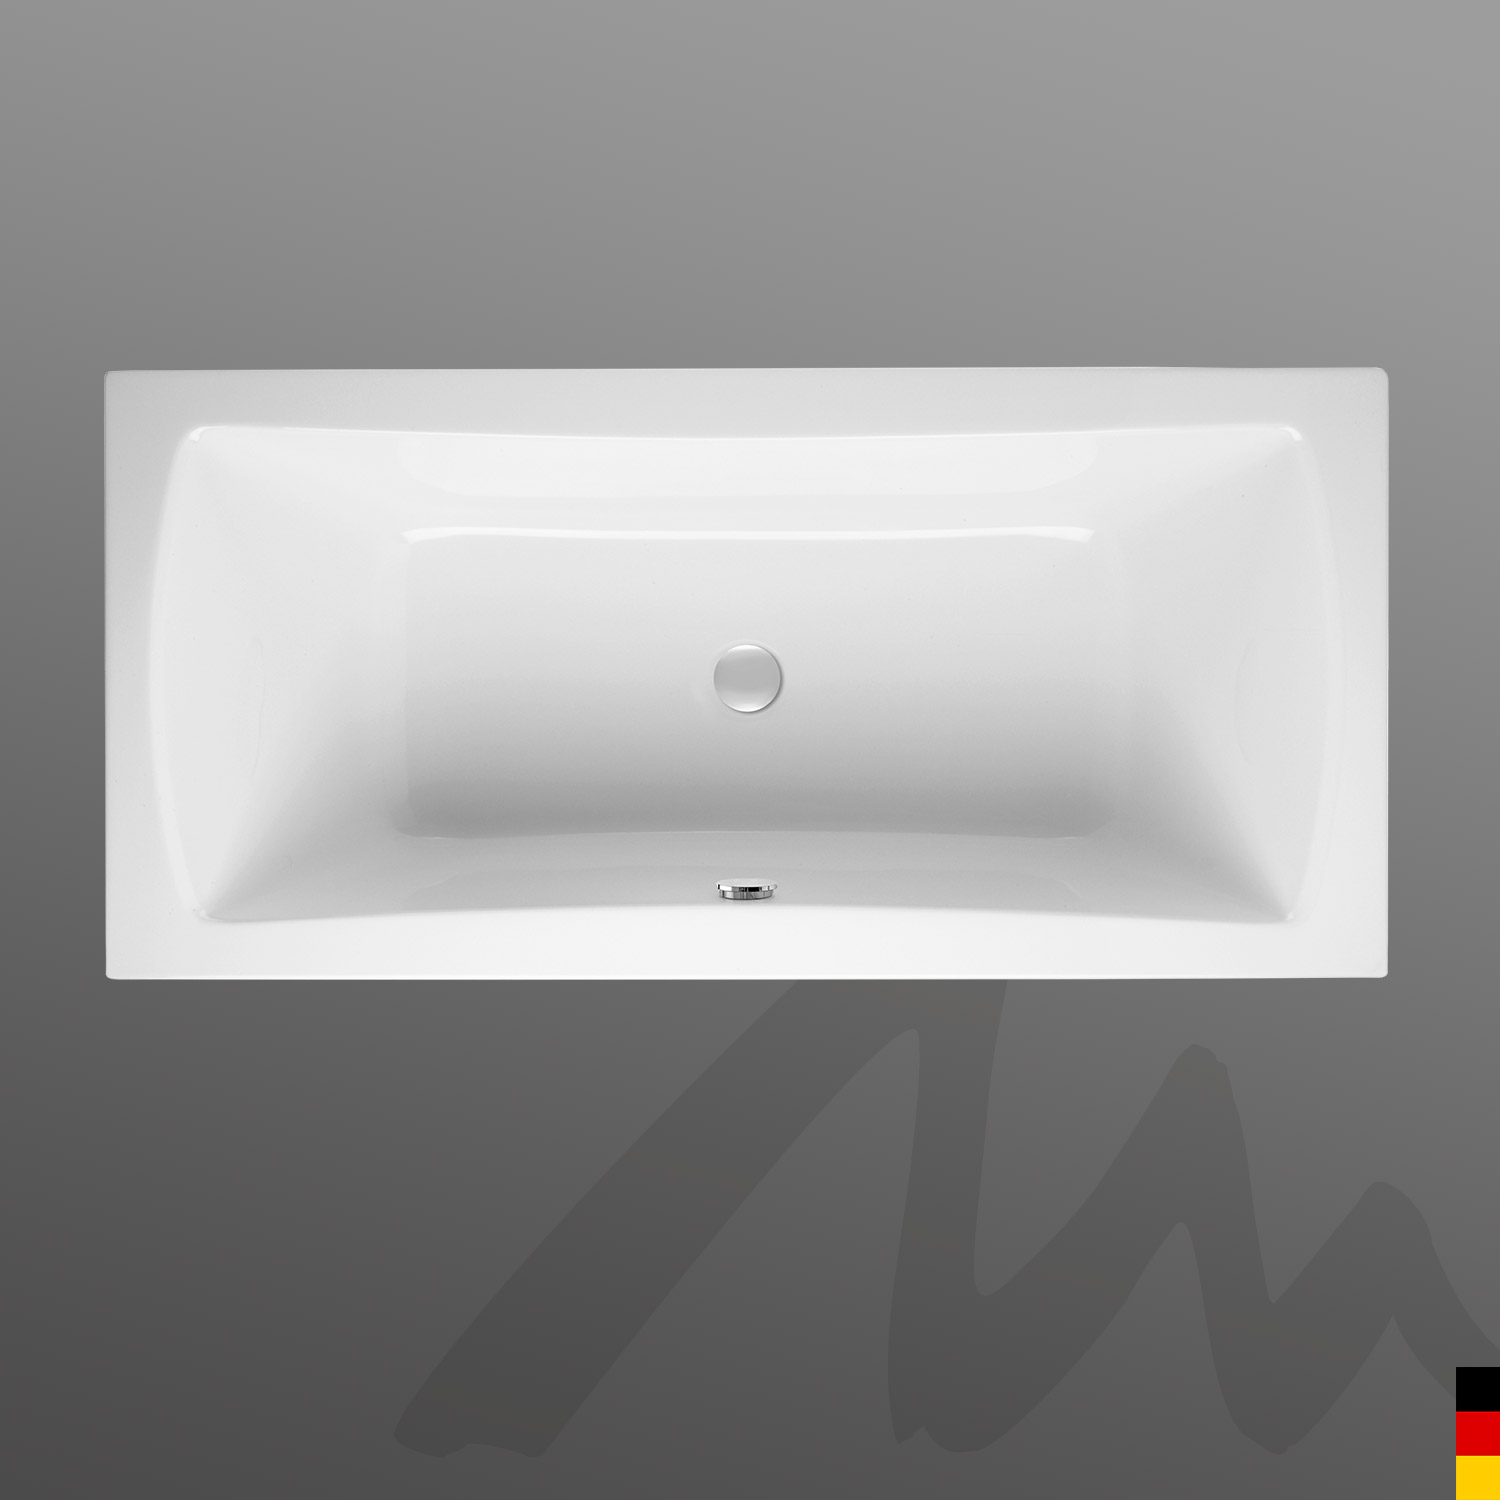 Mauersberger Badewanne Rechteck Jucunda 180/90 duo  180x90x48cm  Farbe:weiß